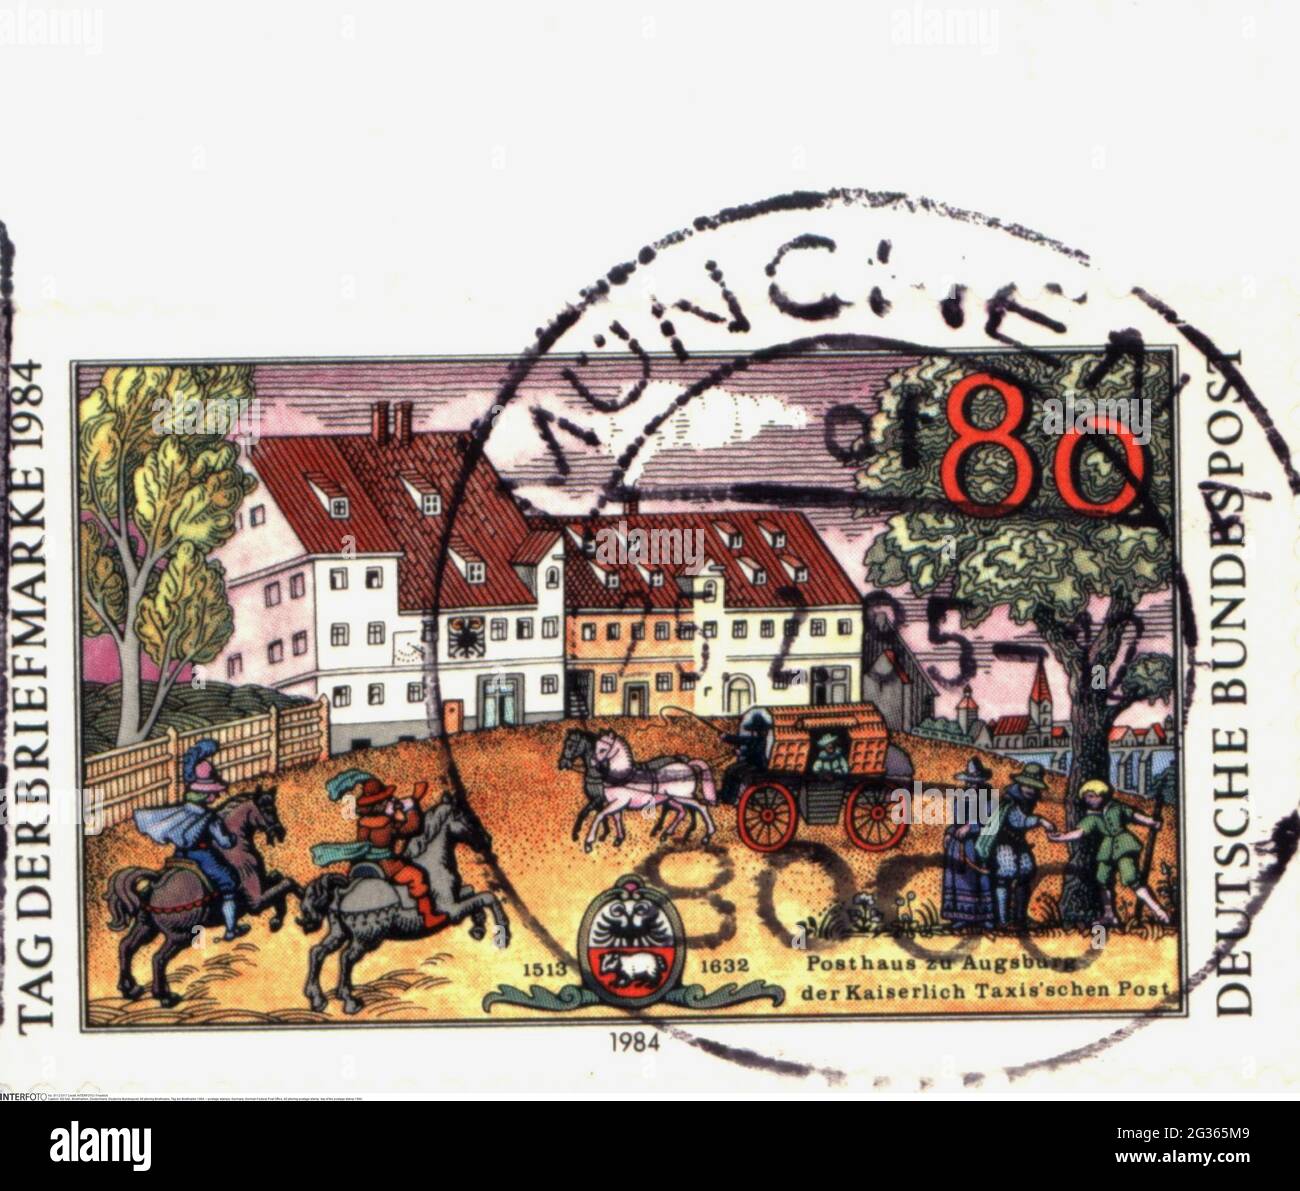 Timbres-poste, Allemagne, poste fédérale allemande, timbre-poste pfennig 80, DROITS-SUPPLÉMENTAIRES-AUTORISATION-INFO-NON-DISPONIBLE Banque D'Images